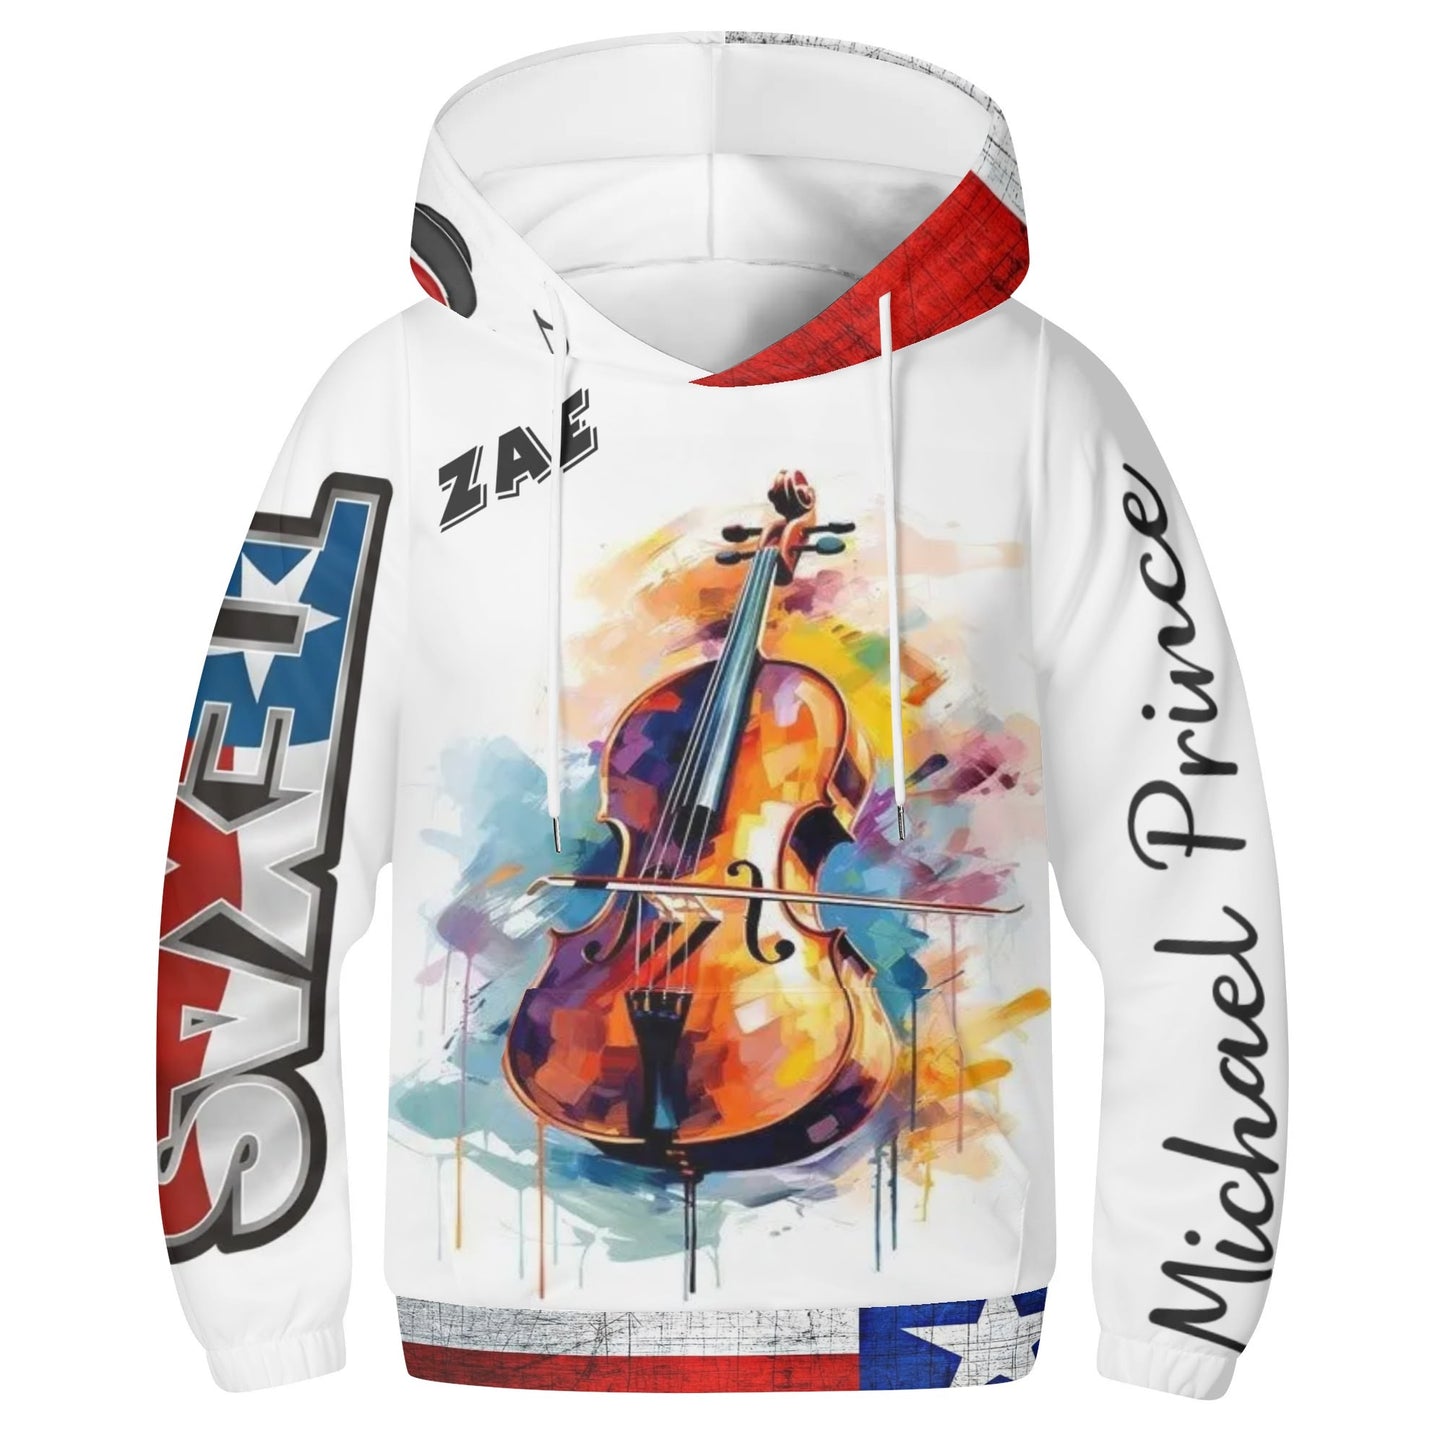 Michael Prince Violin Youth Hoodie Sweatshirt